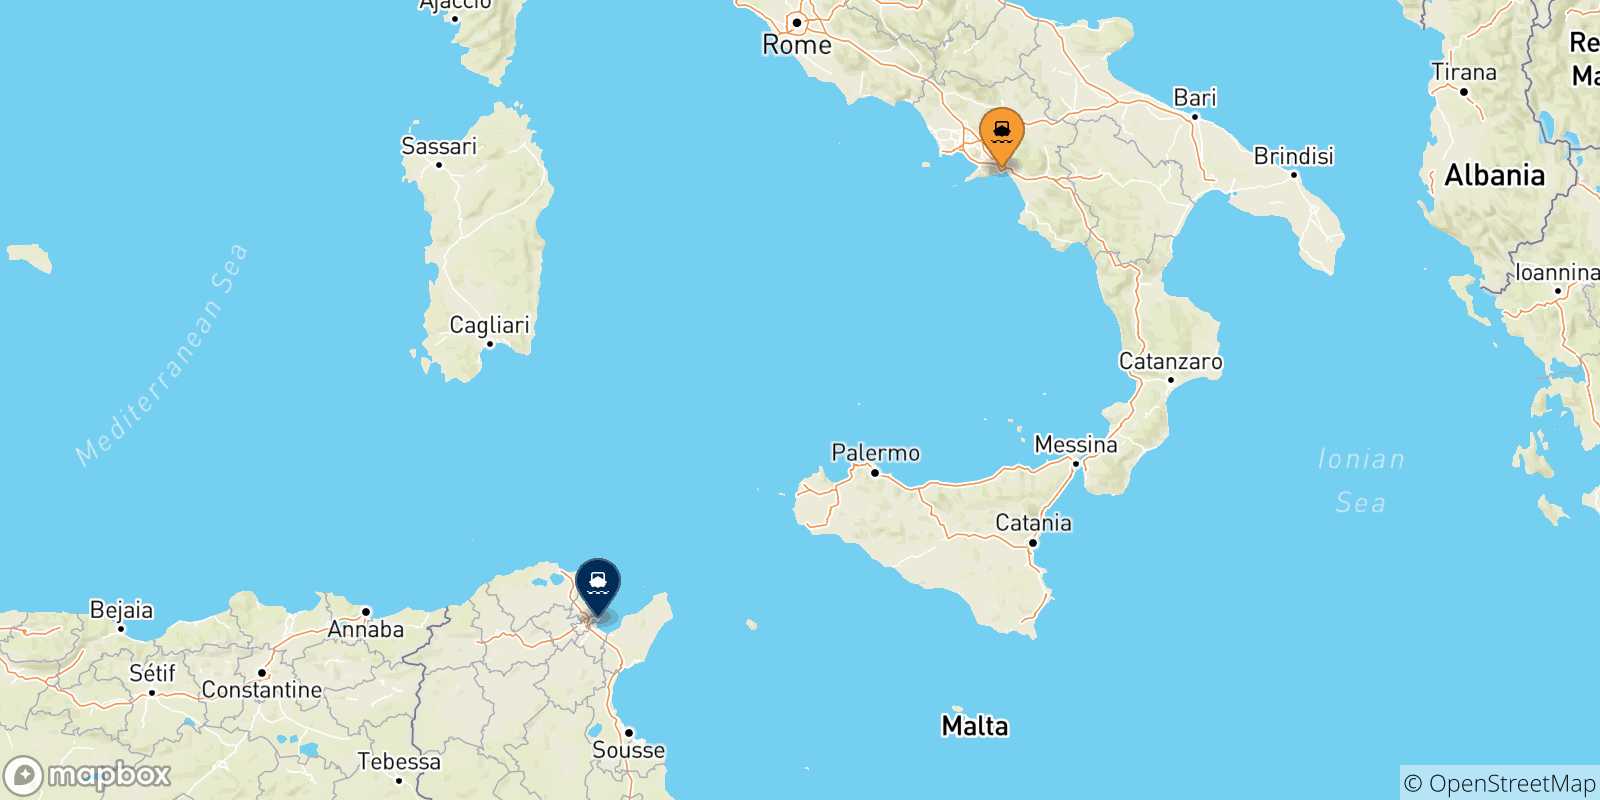 Mappa delle possibili rotte tra Salerno e la Tunisia